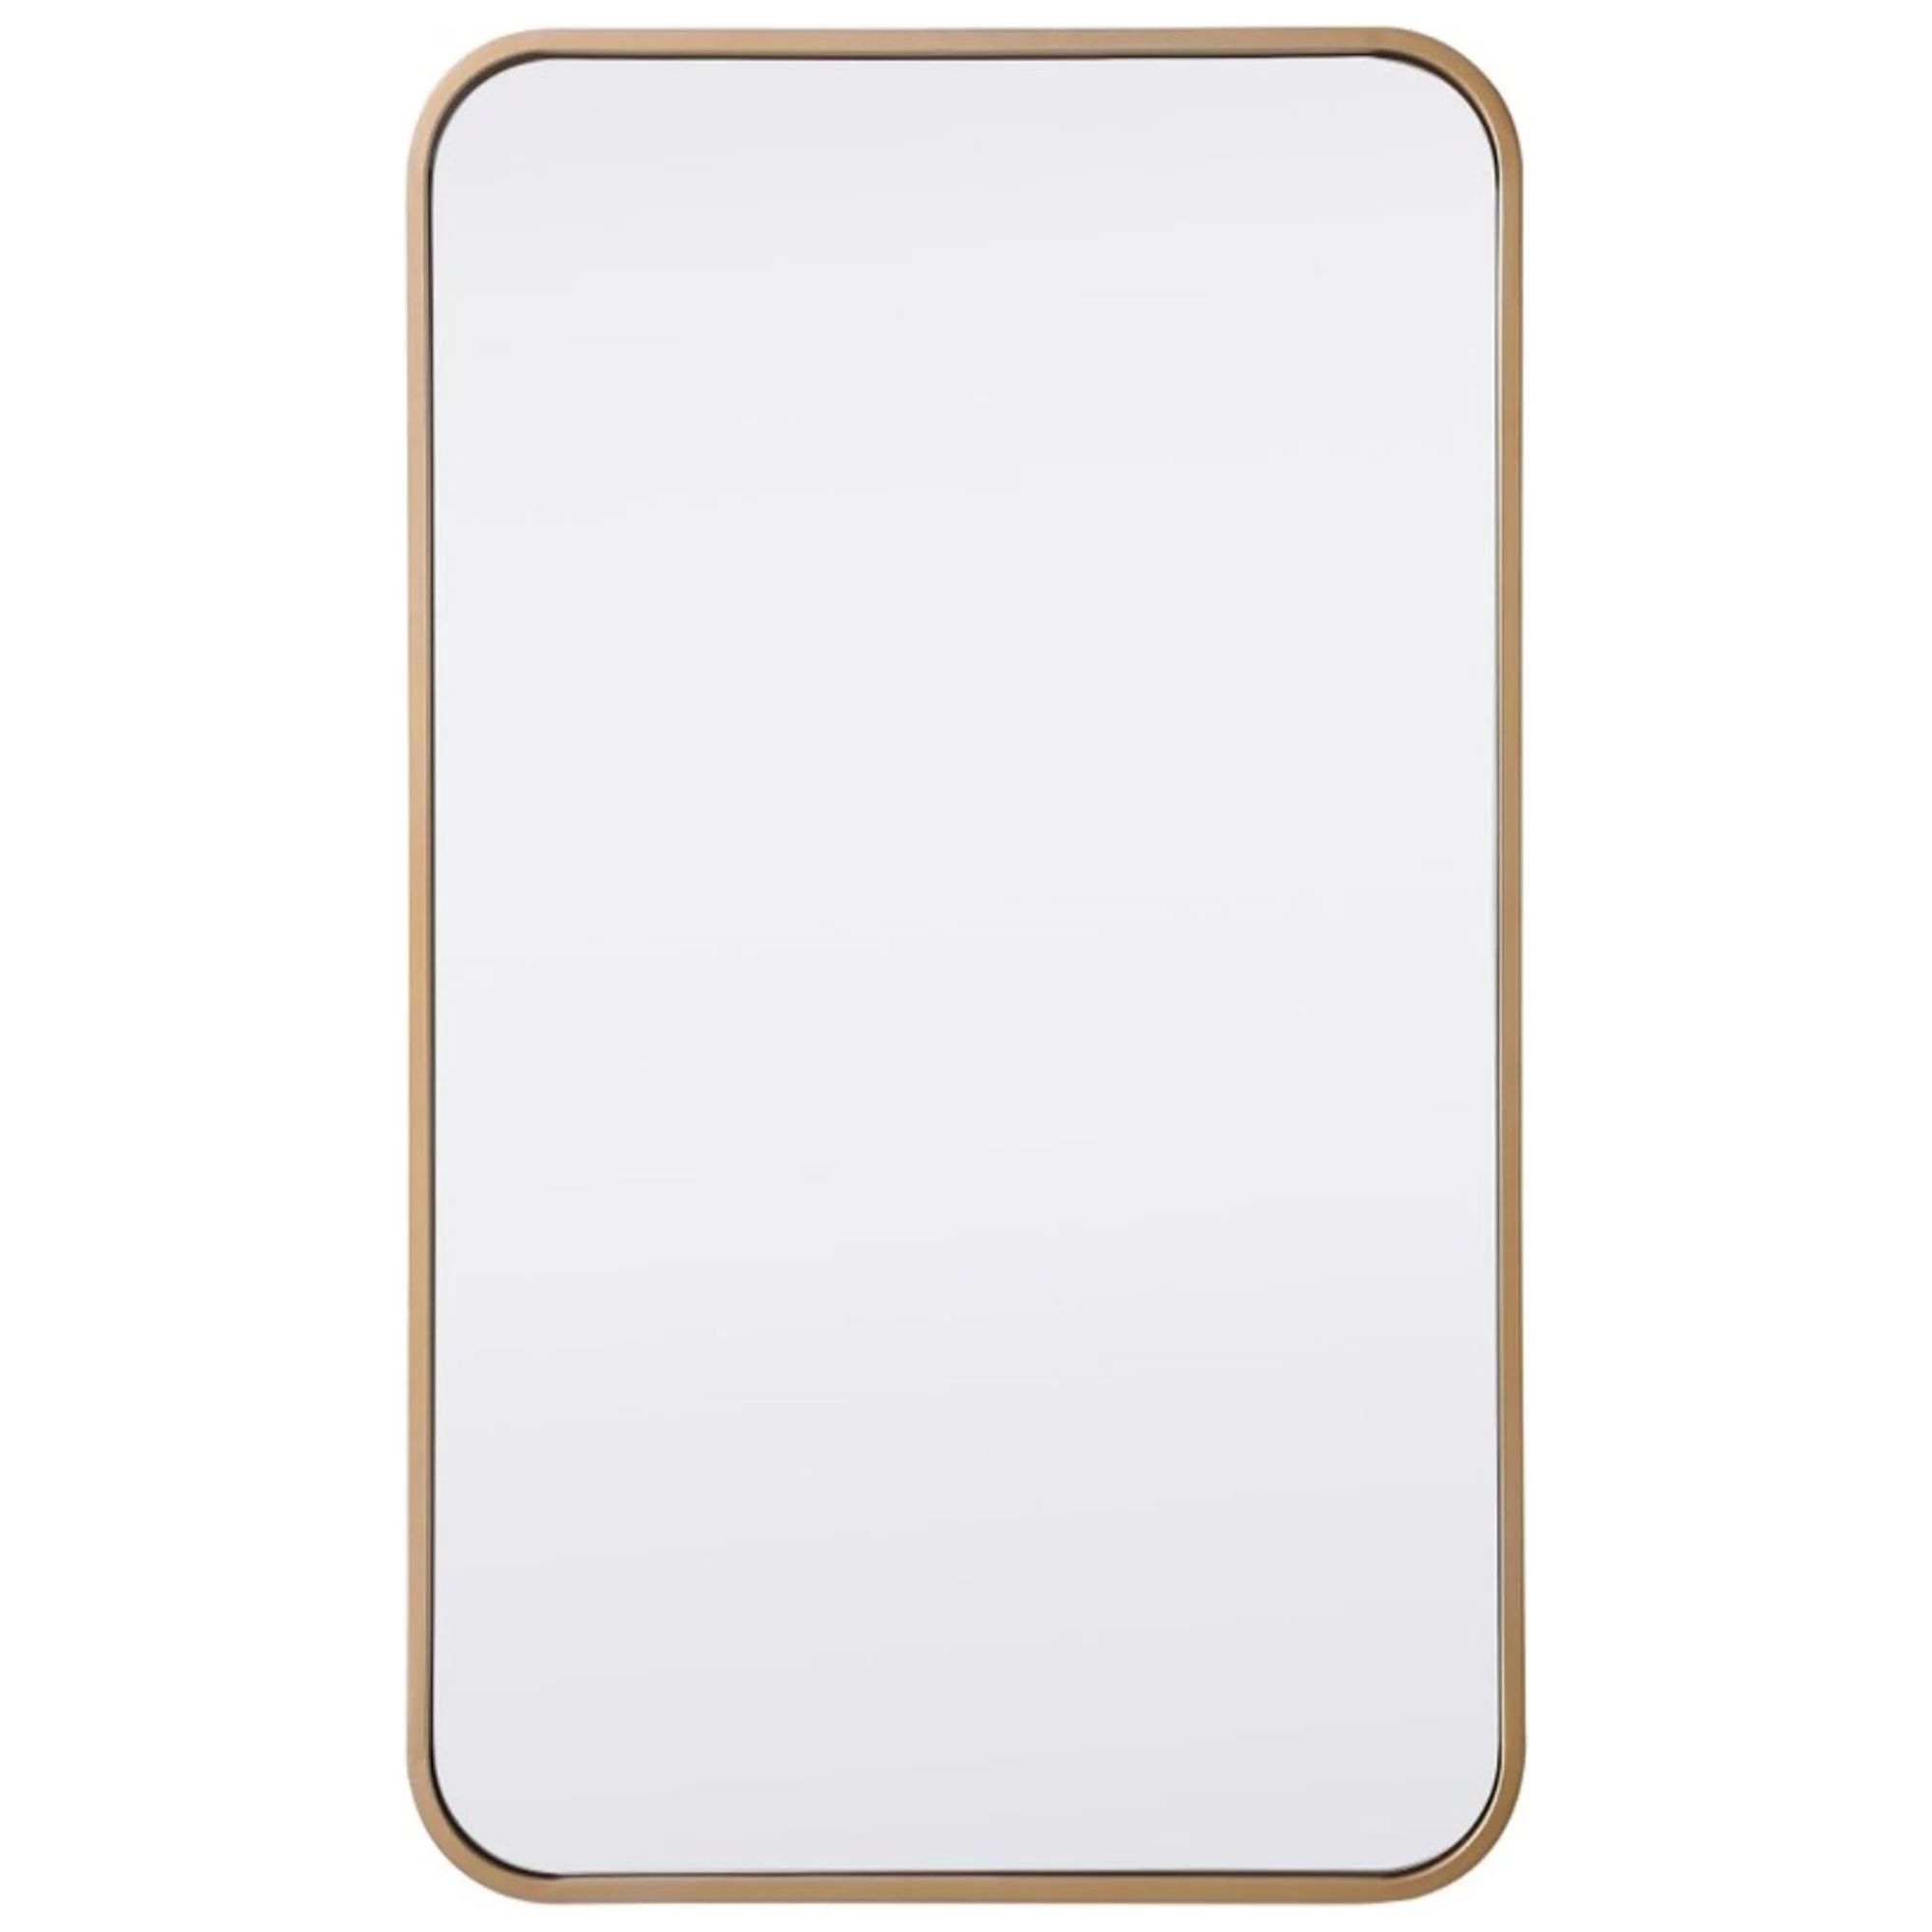 Soft corner metal rectangular mirror 18x30 inch in Brass | Walmart (US)